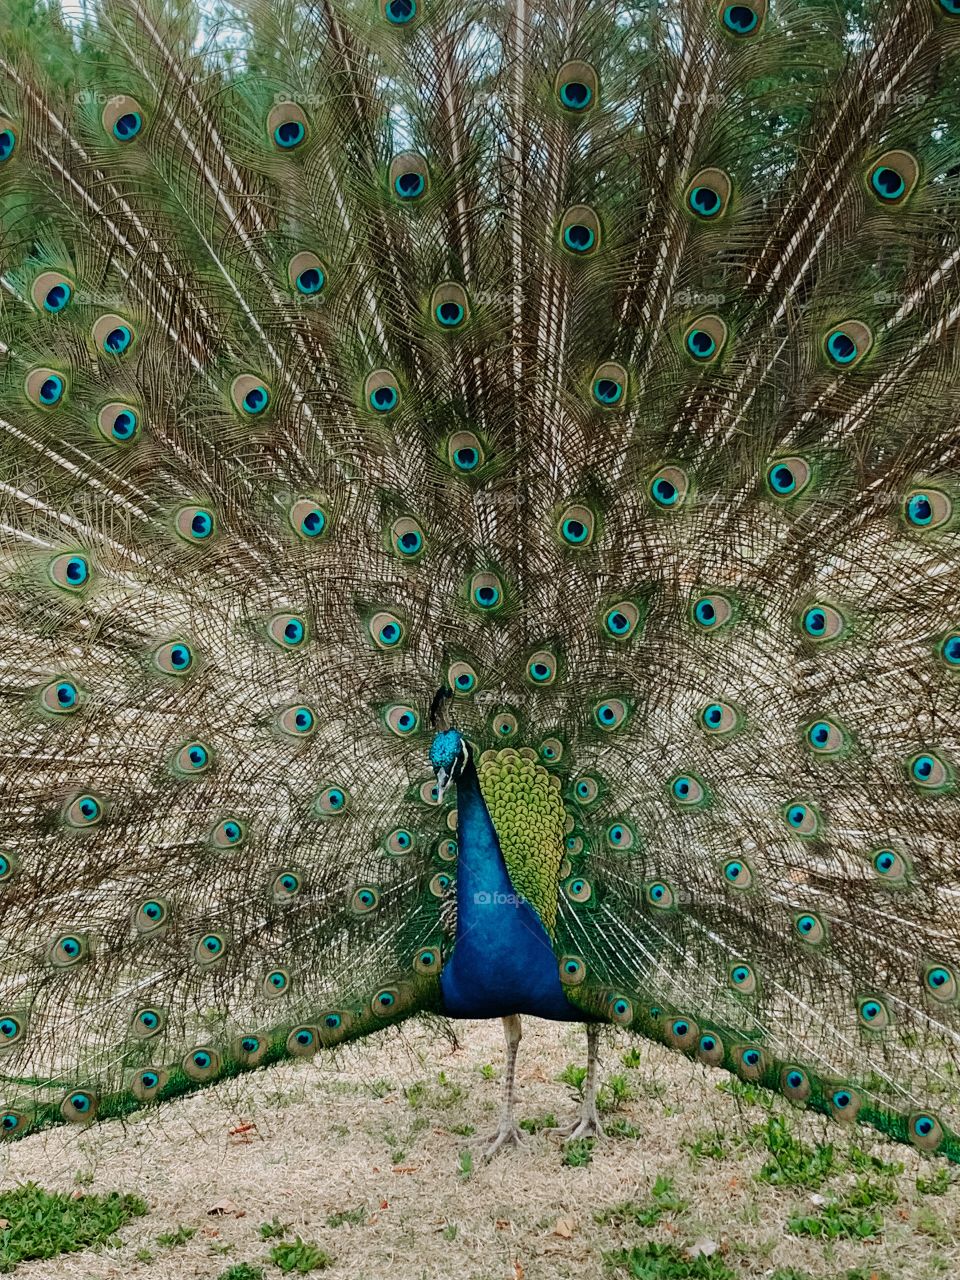 Beautiful peacock 